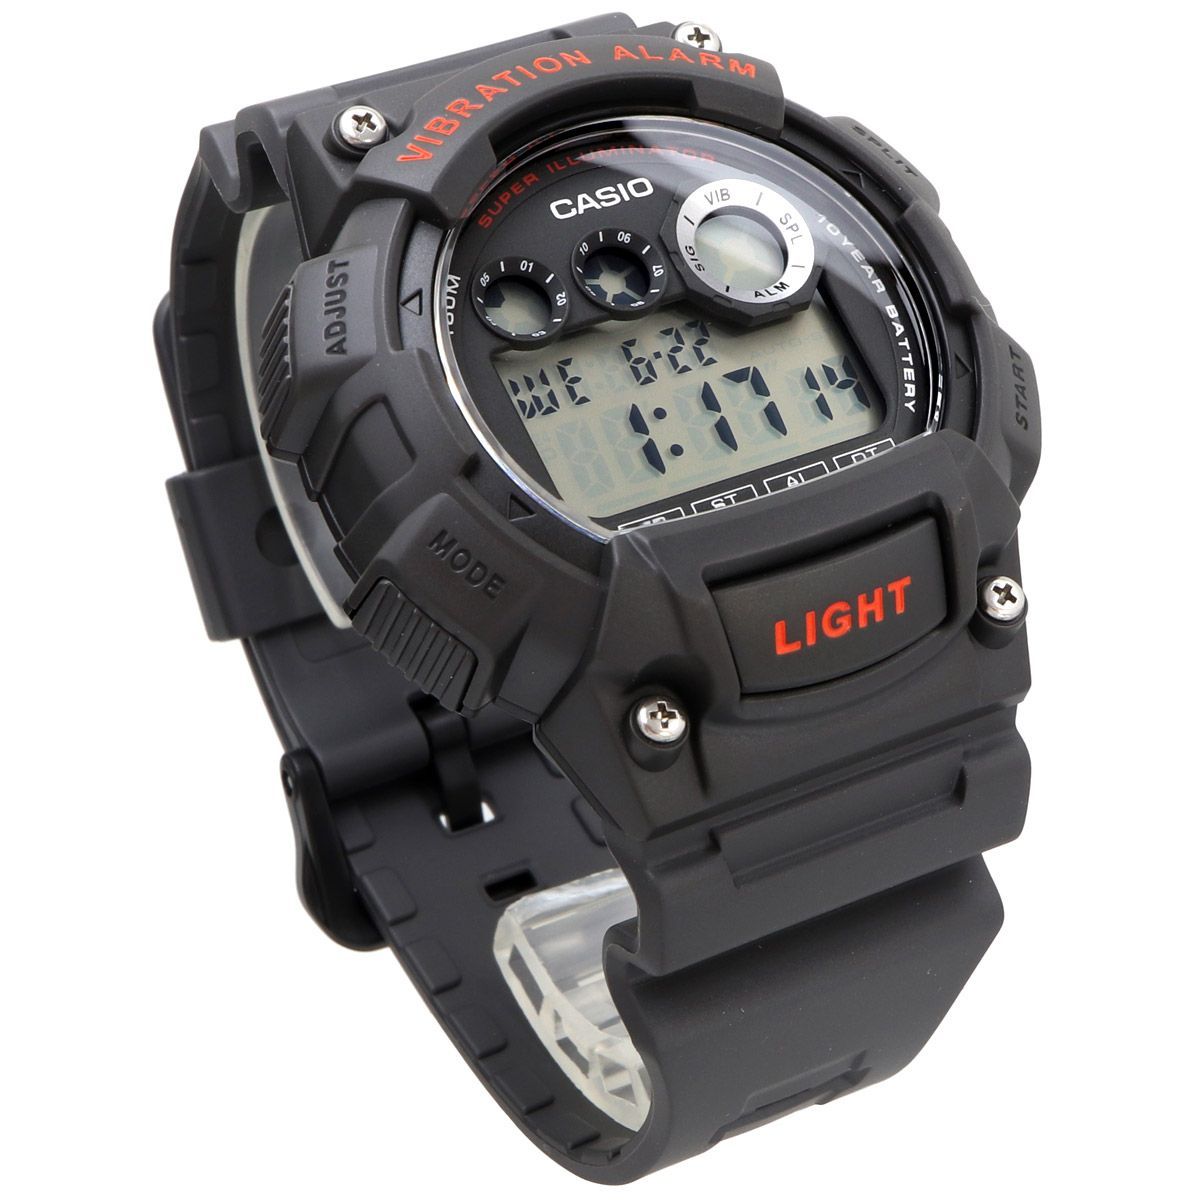 新品 未使用 カシオ チープカシオ チプカシ 腕時計 W-735H-8AV-3